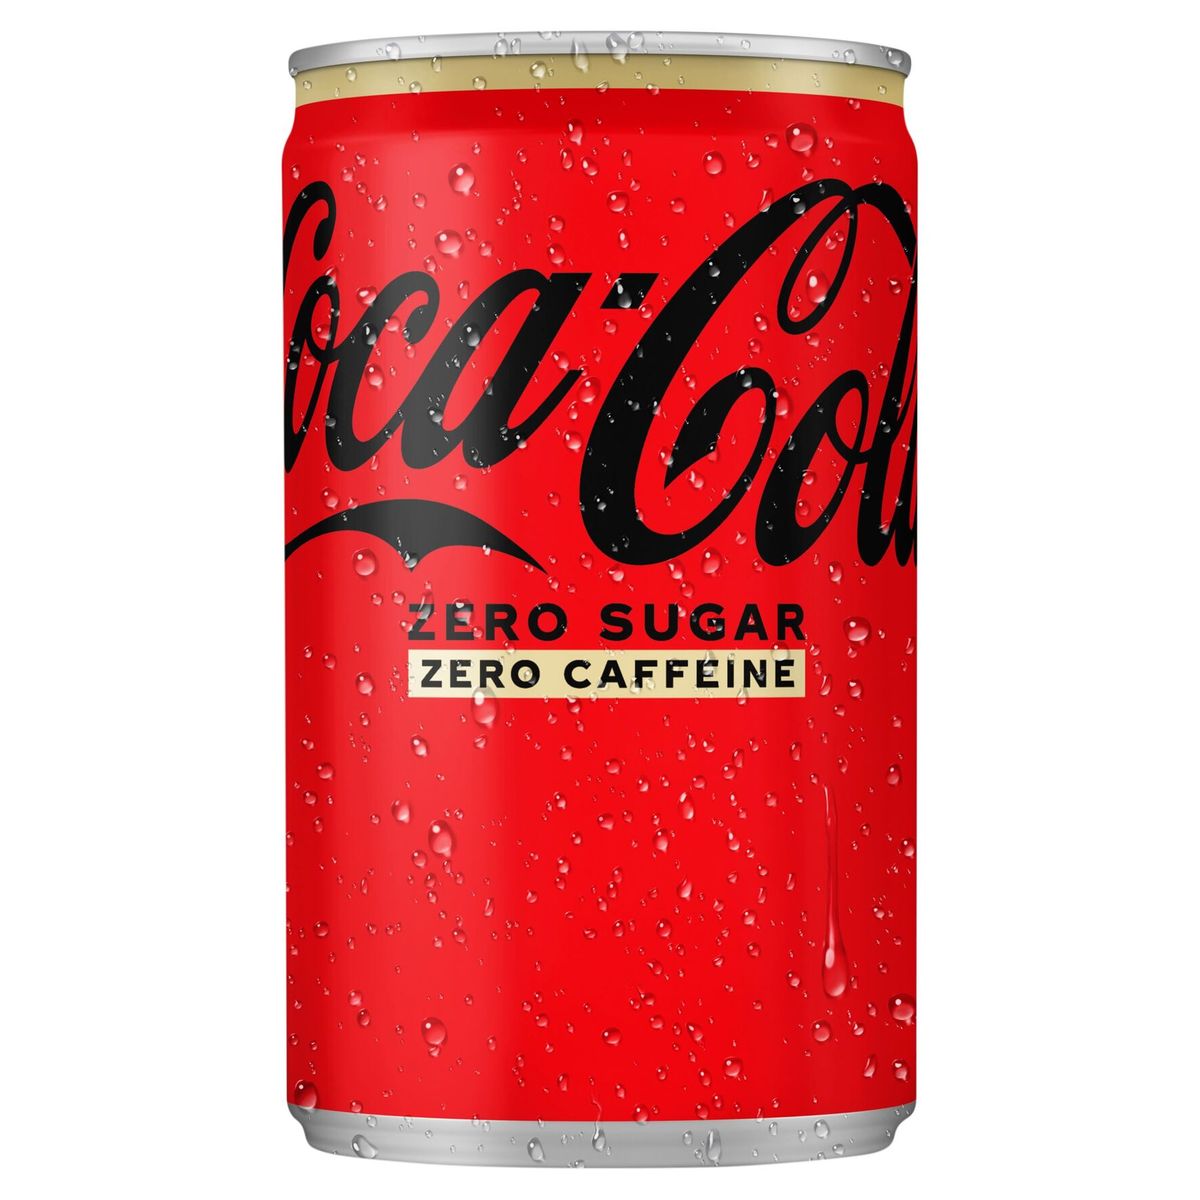 Coca-Cola Zero No Caffeine Coke Soft drink Canette 150 ml